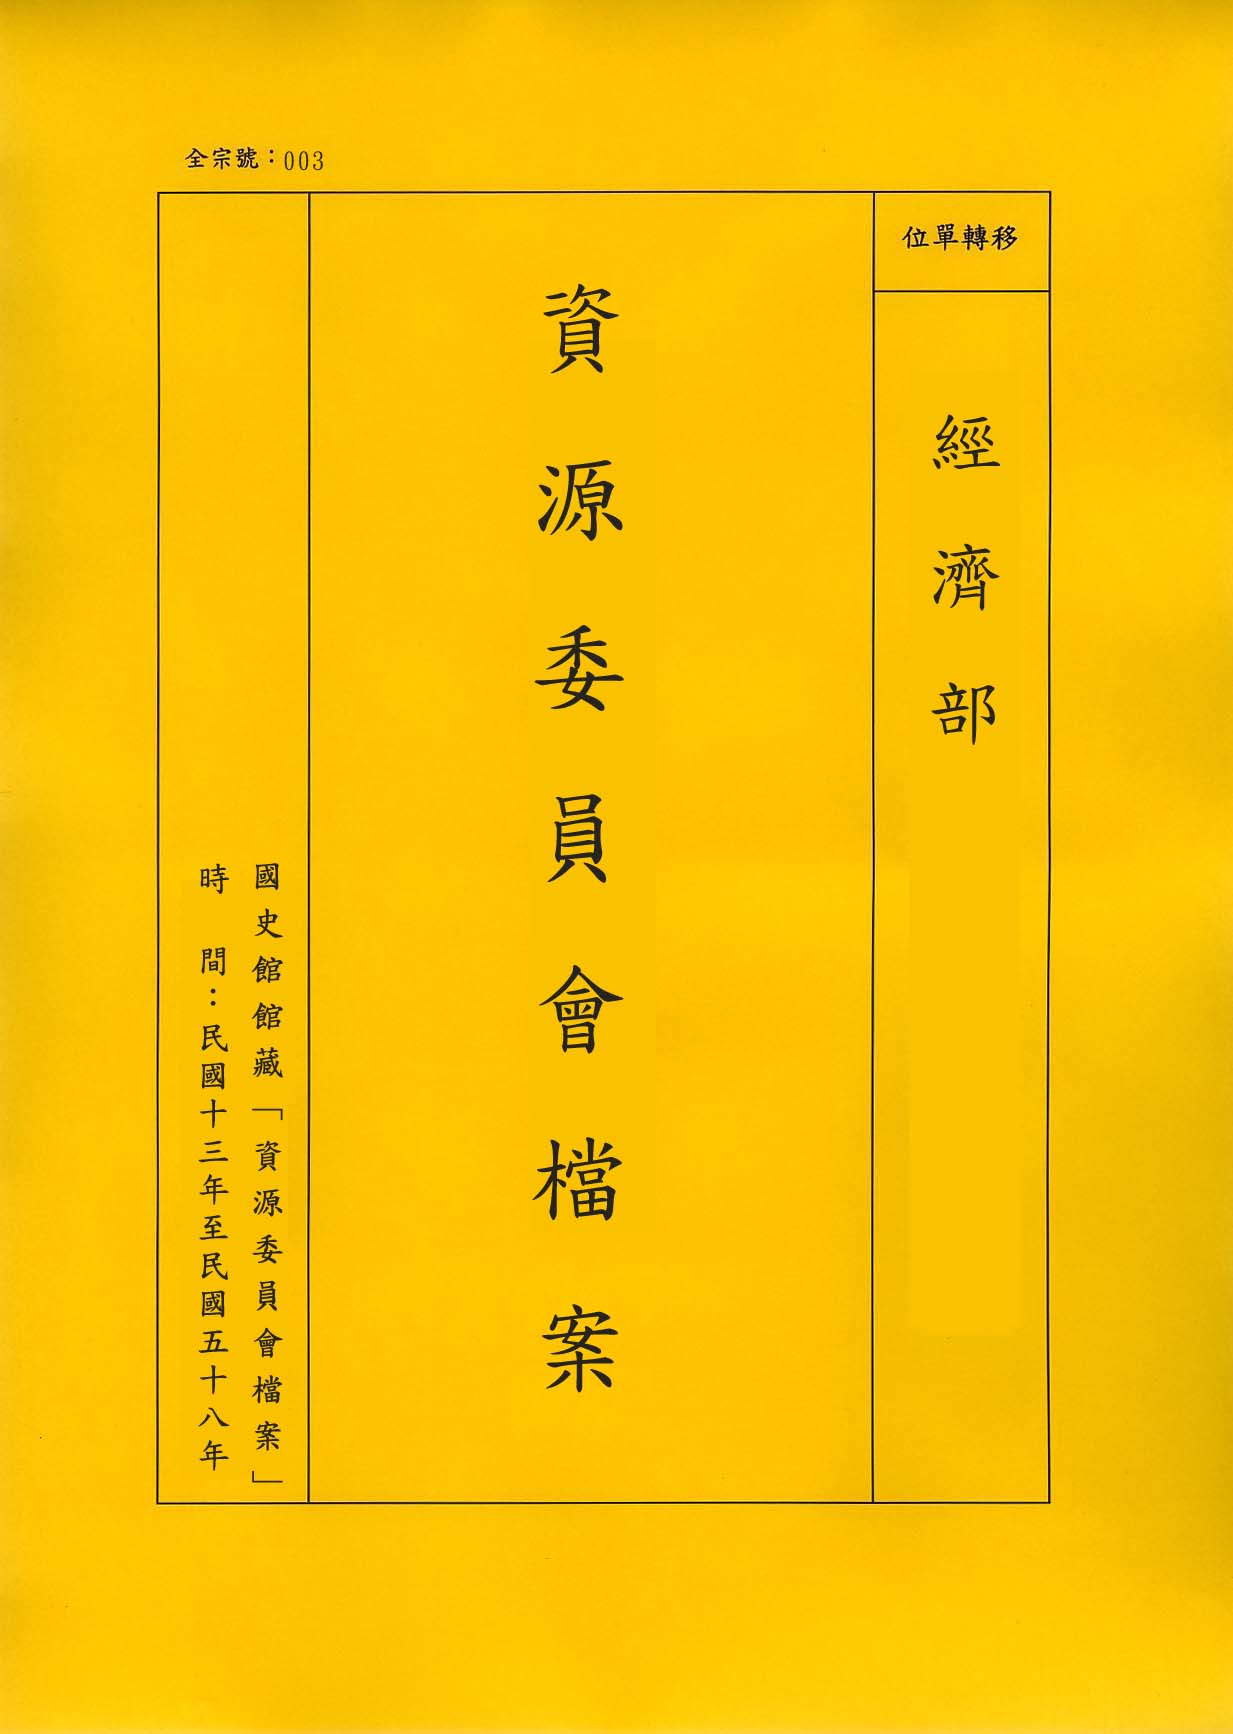 卷名:王安函件Letters of An Wang(003-020600-2620)